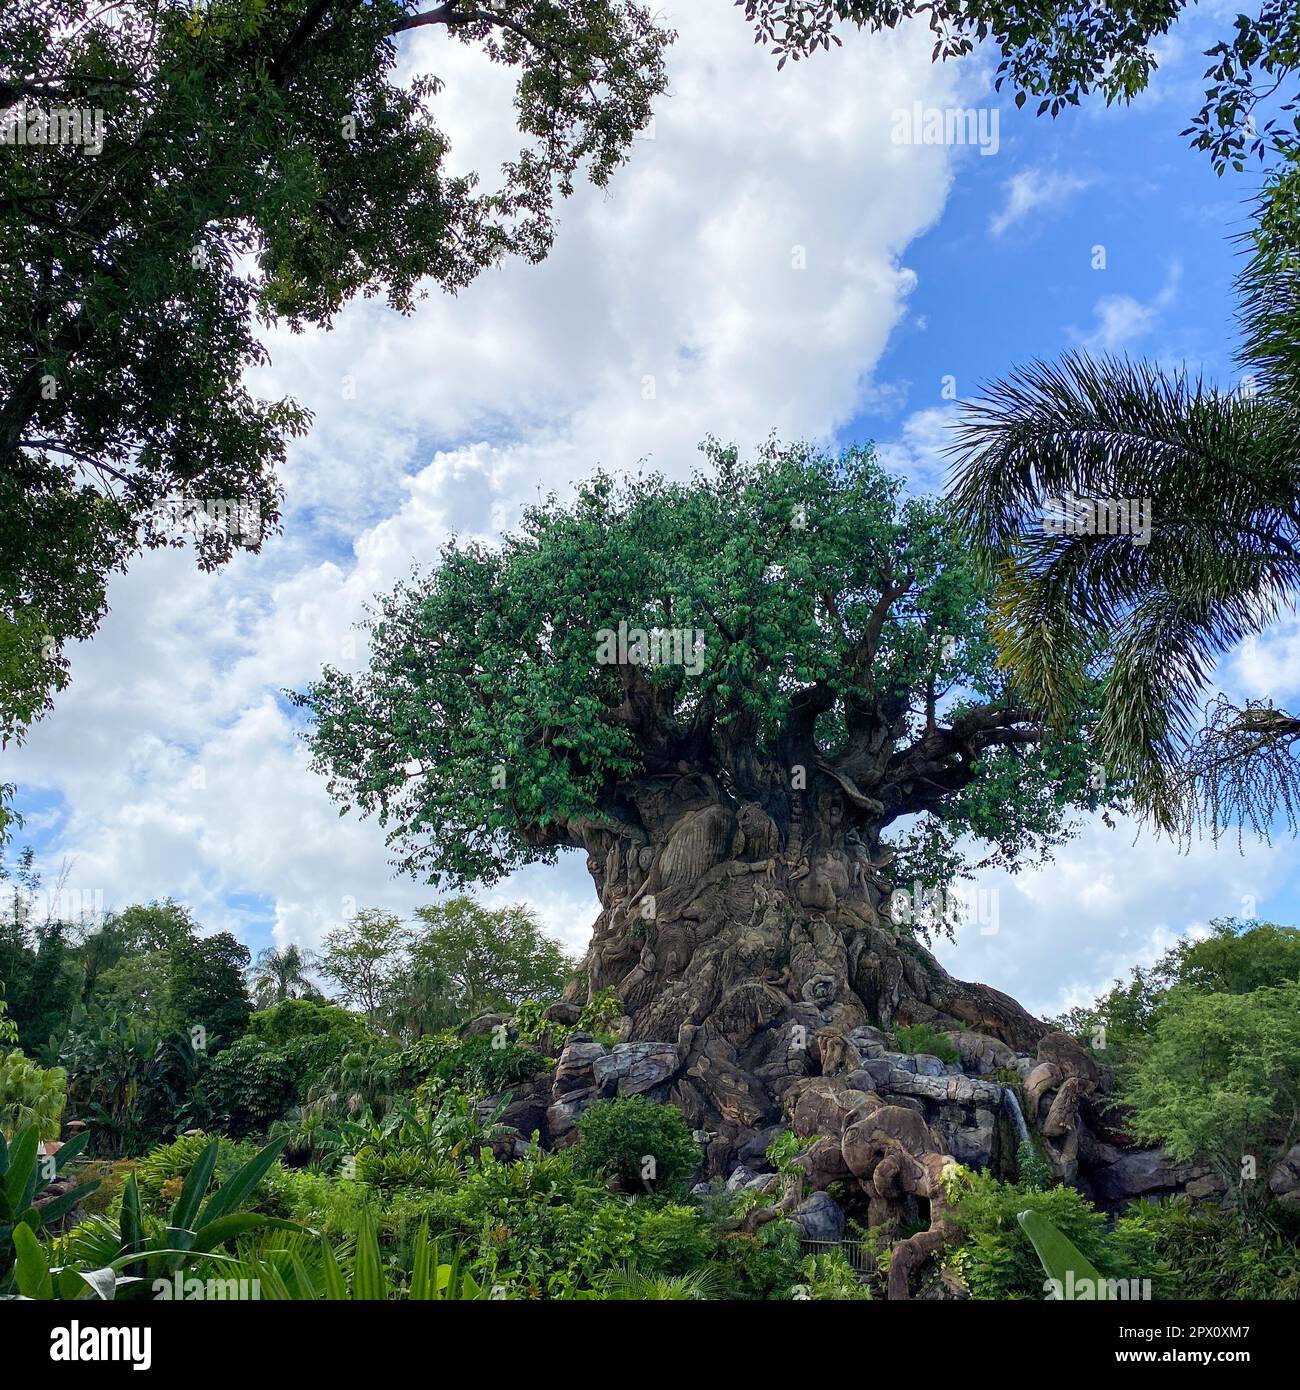 Orlando, FL USA - 18. Juli 2020: Der Baum des Lebens im Animal Kingdom in der Walt Disney World in Orlando, Florida. Stockfoto